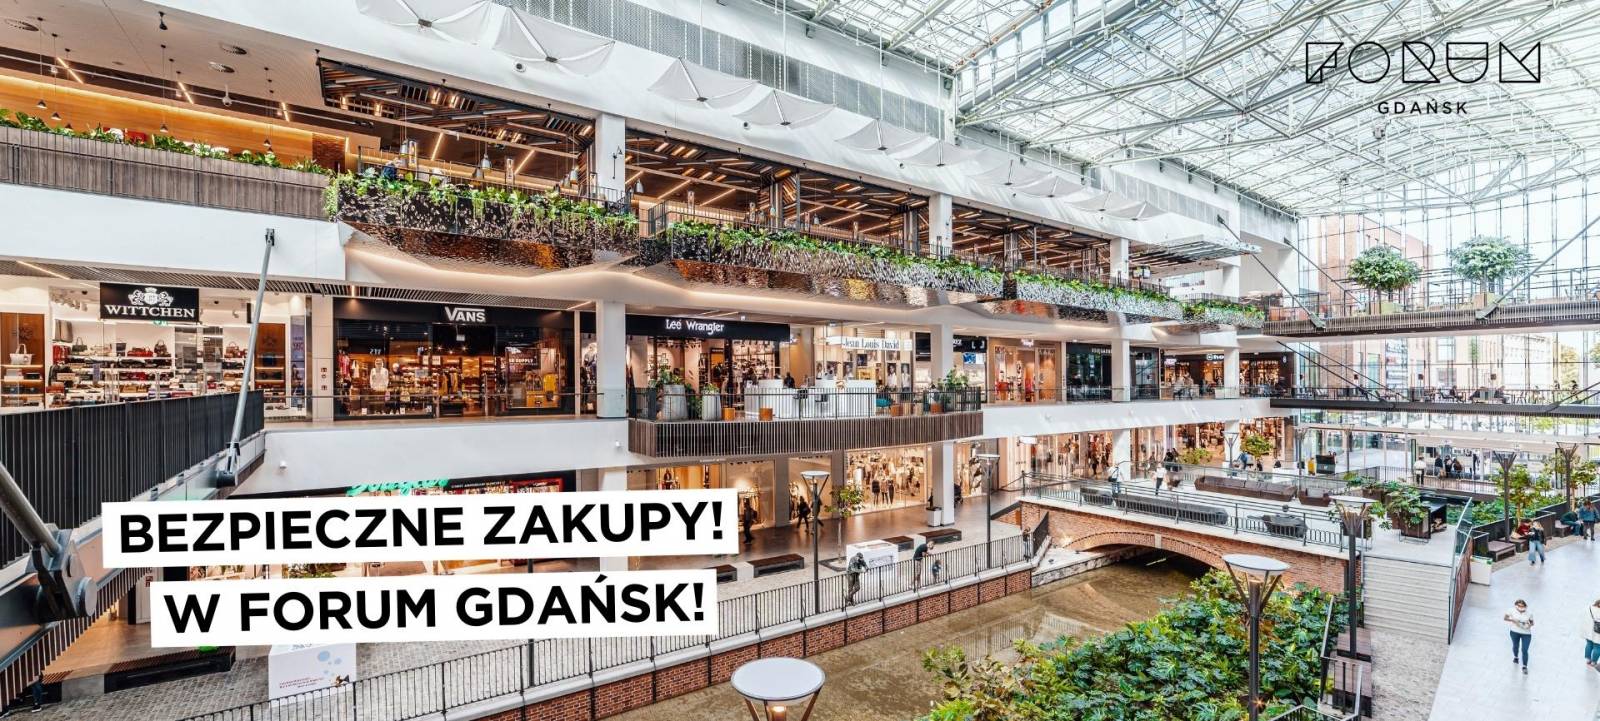 Bezpieczne zakupy w Forum Gdańsk